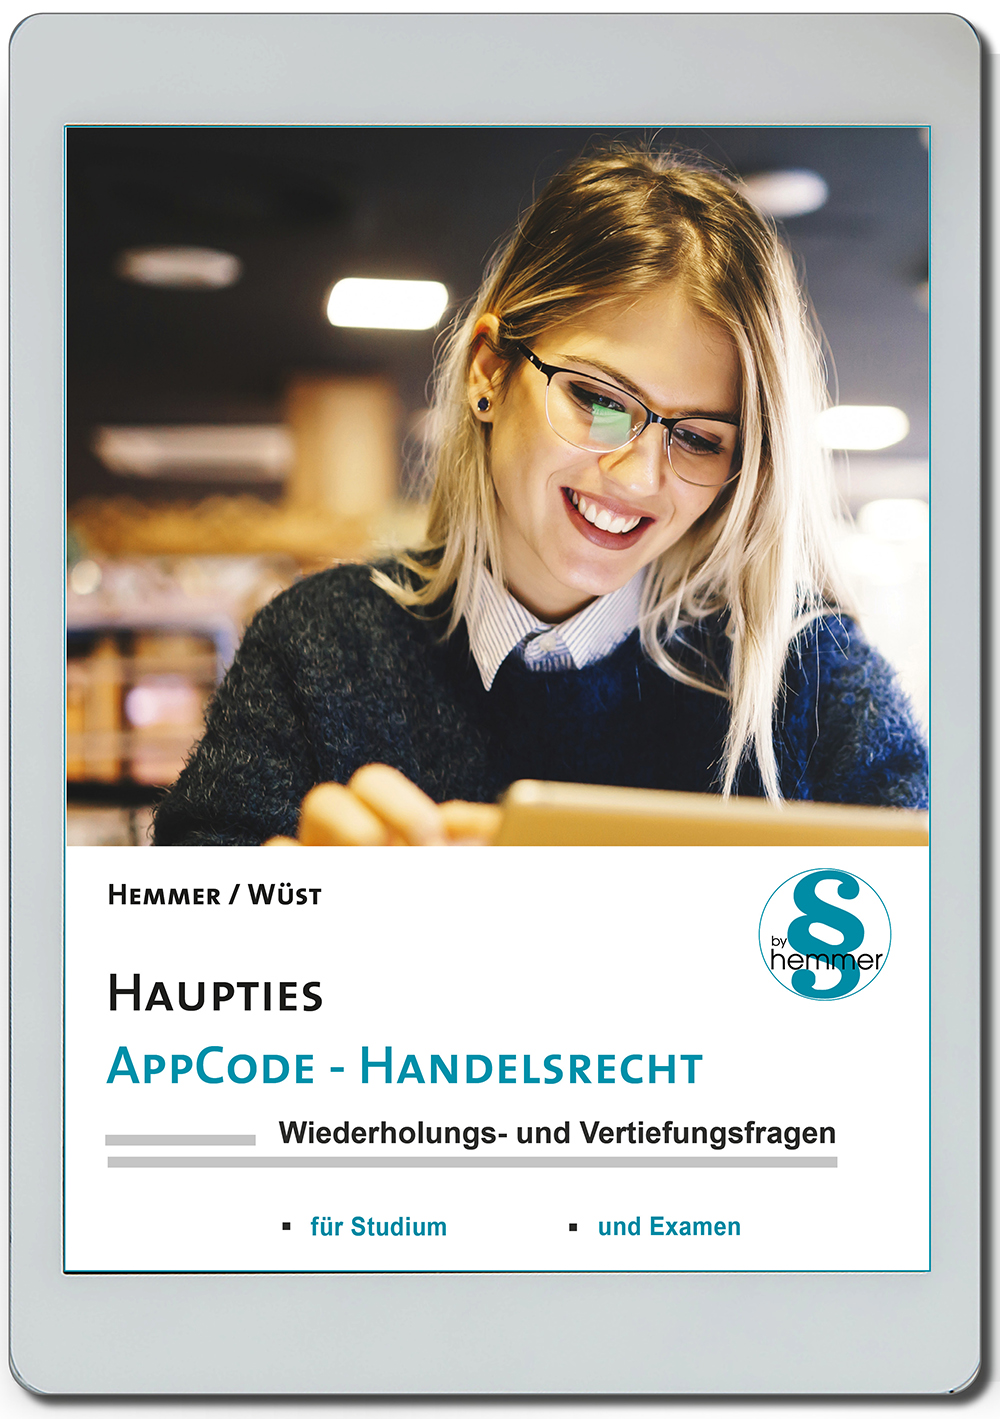 AppCode - haupties - Handelsrecht